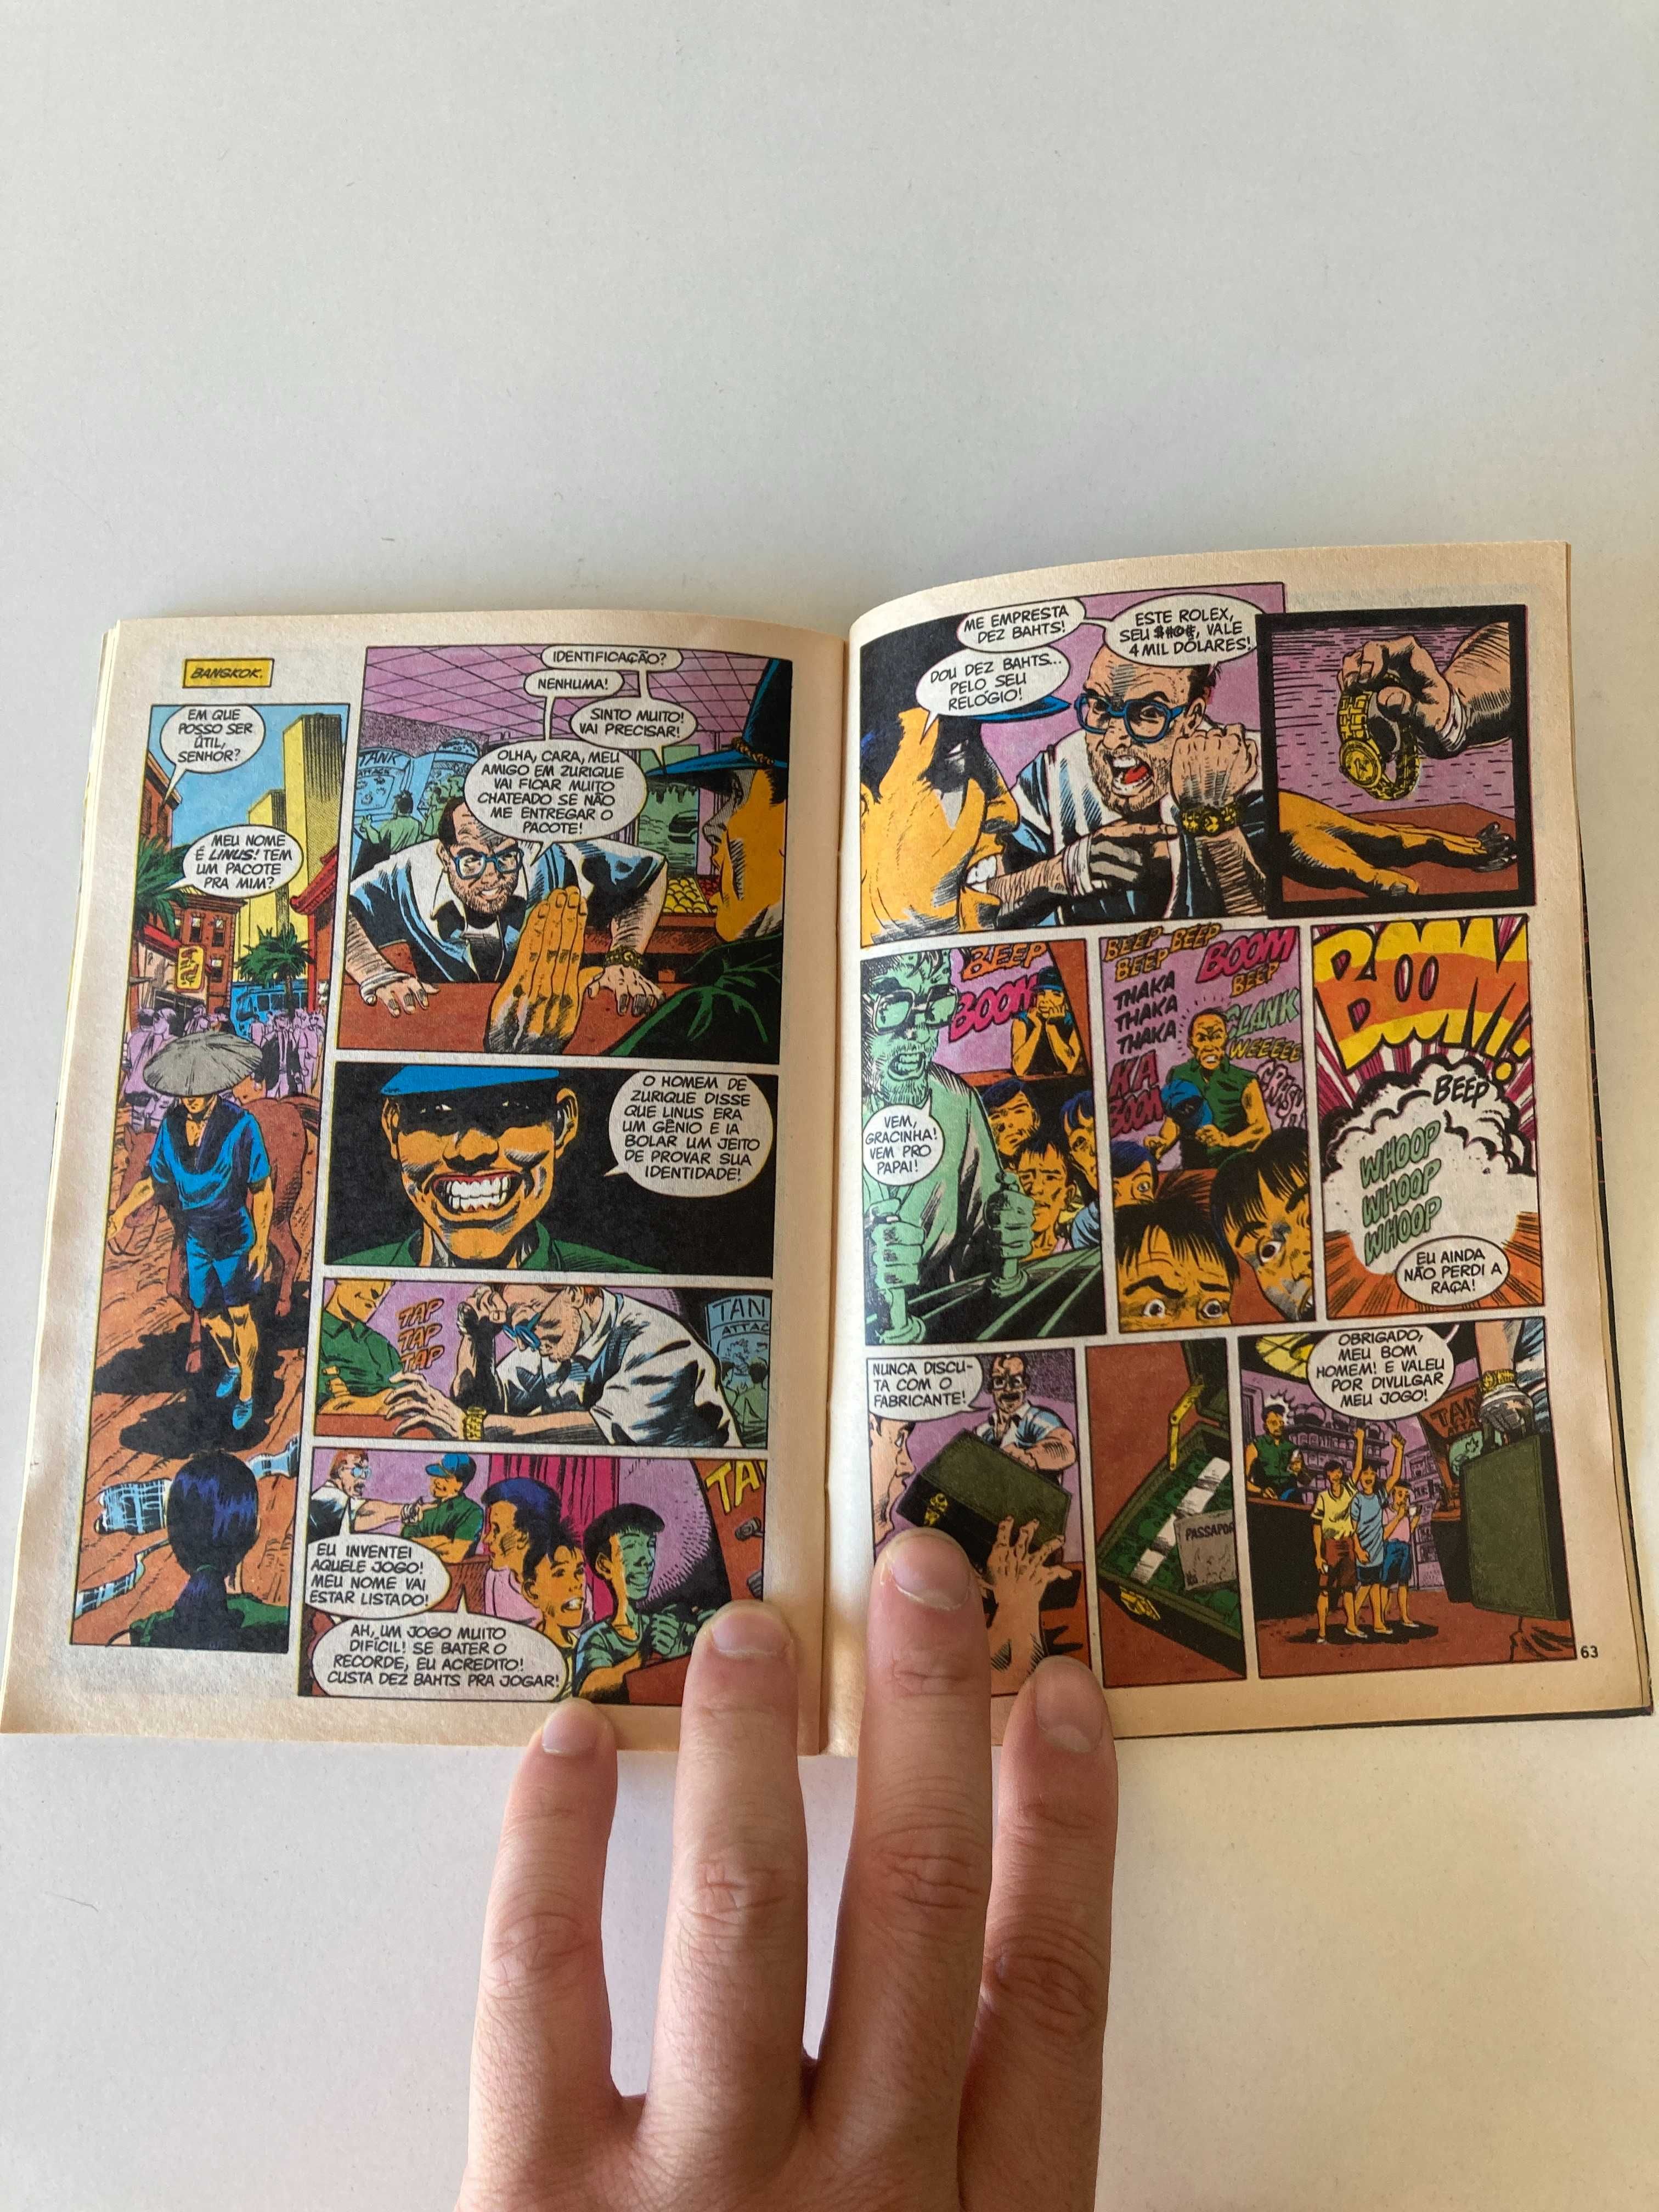 Wolverine Nº35 (1995) Segredos Revelados - HQ Banda desenhada PT/BR